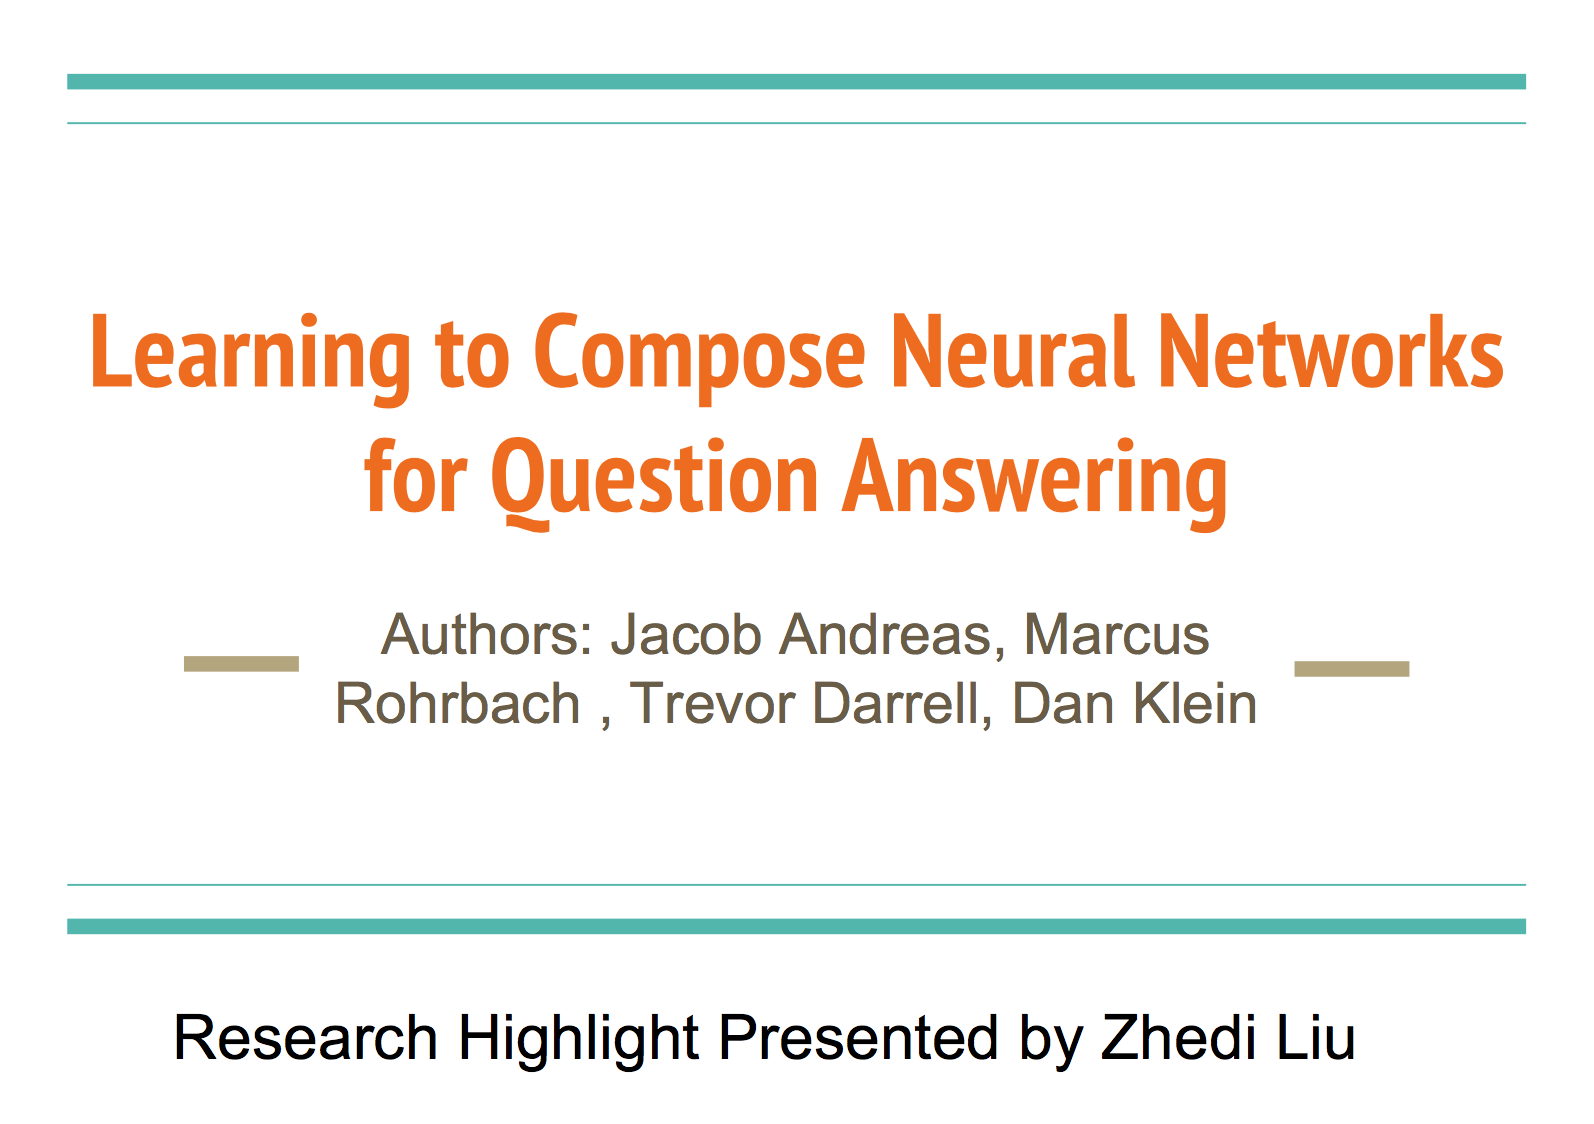 CS224n研究热点14 自动组合神经网络做问答系统